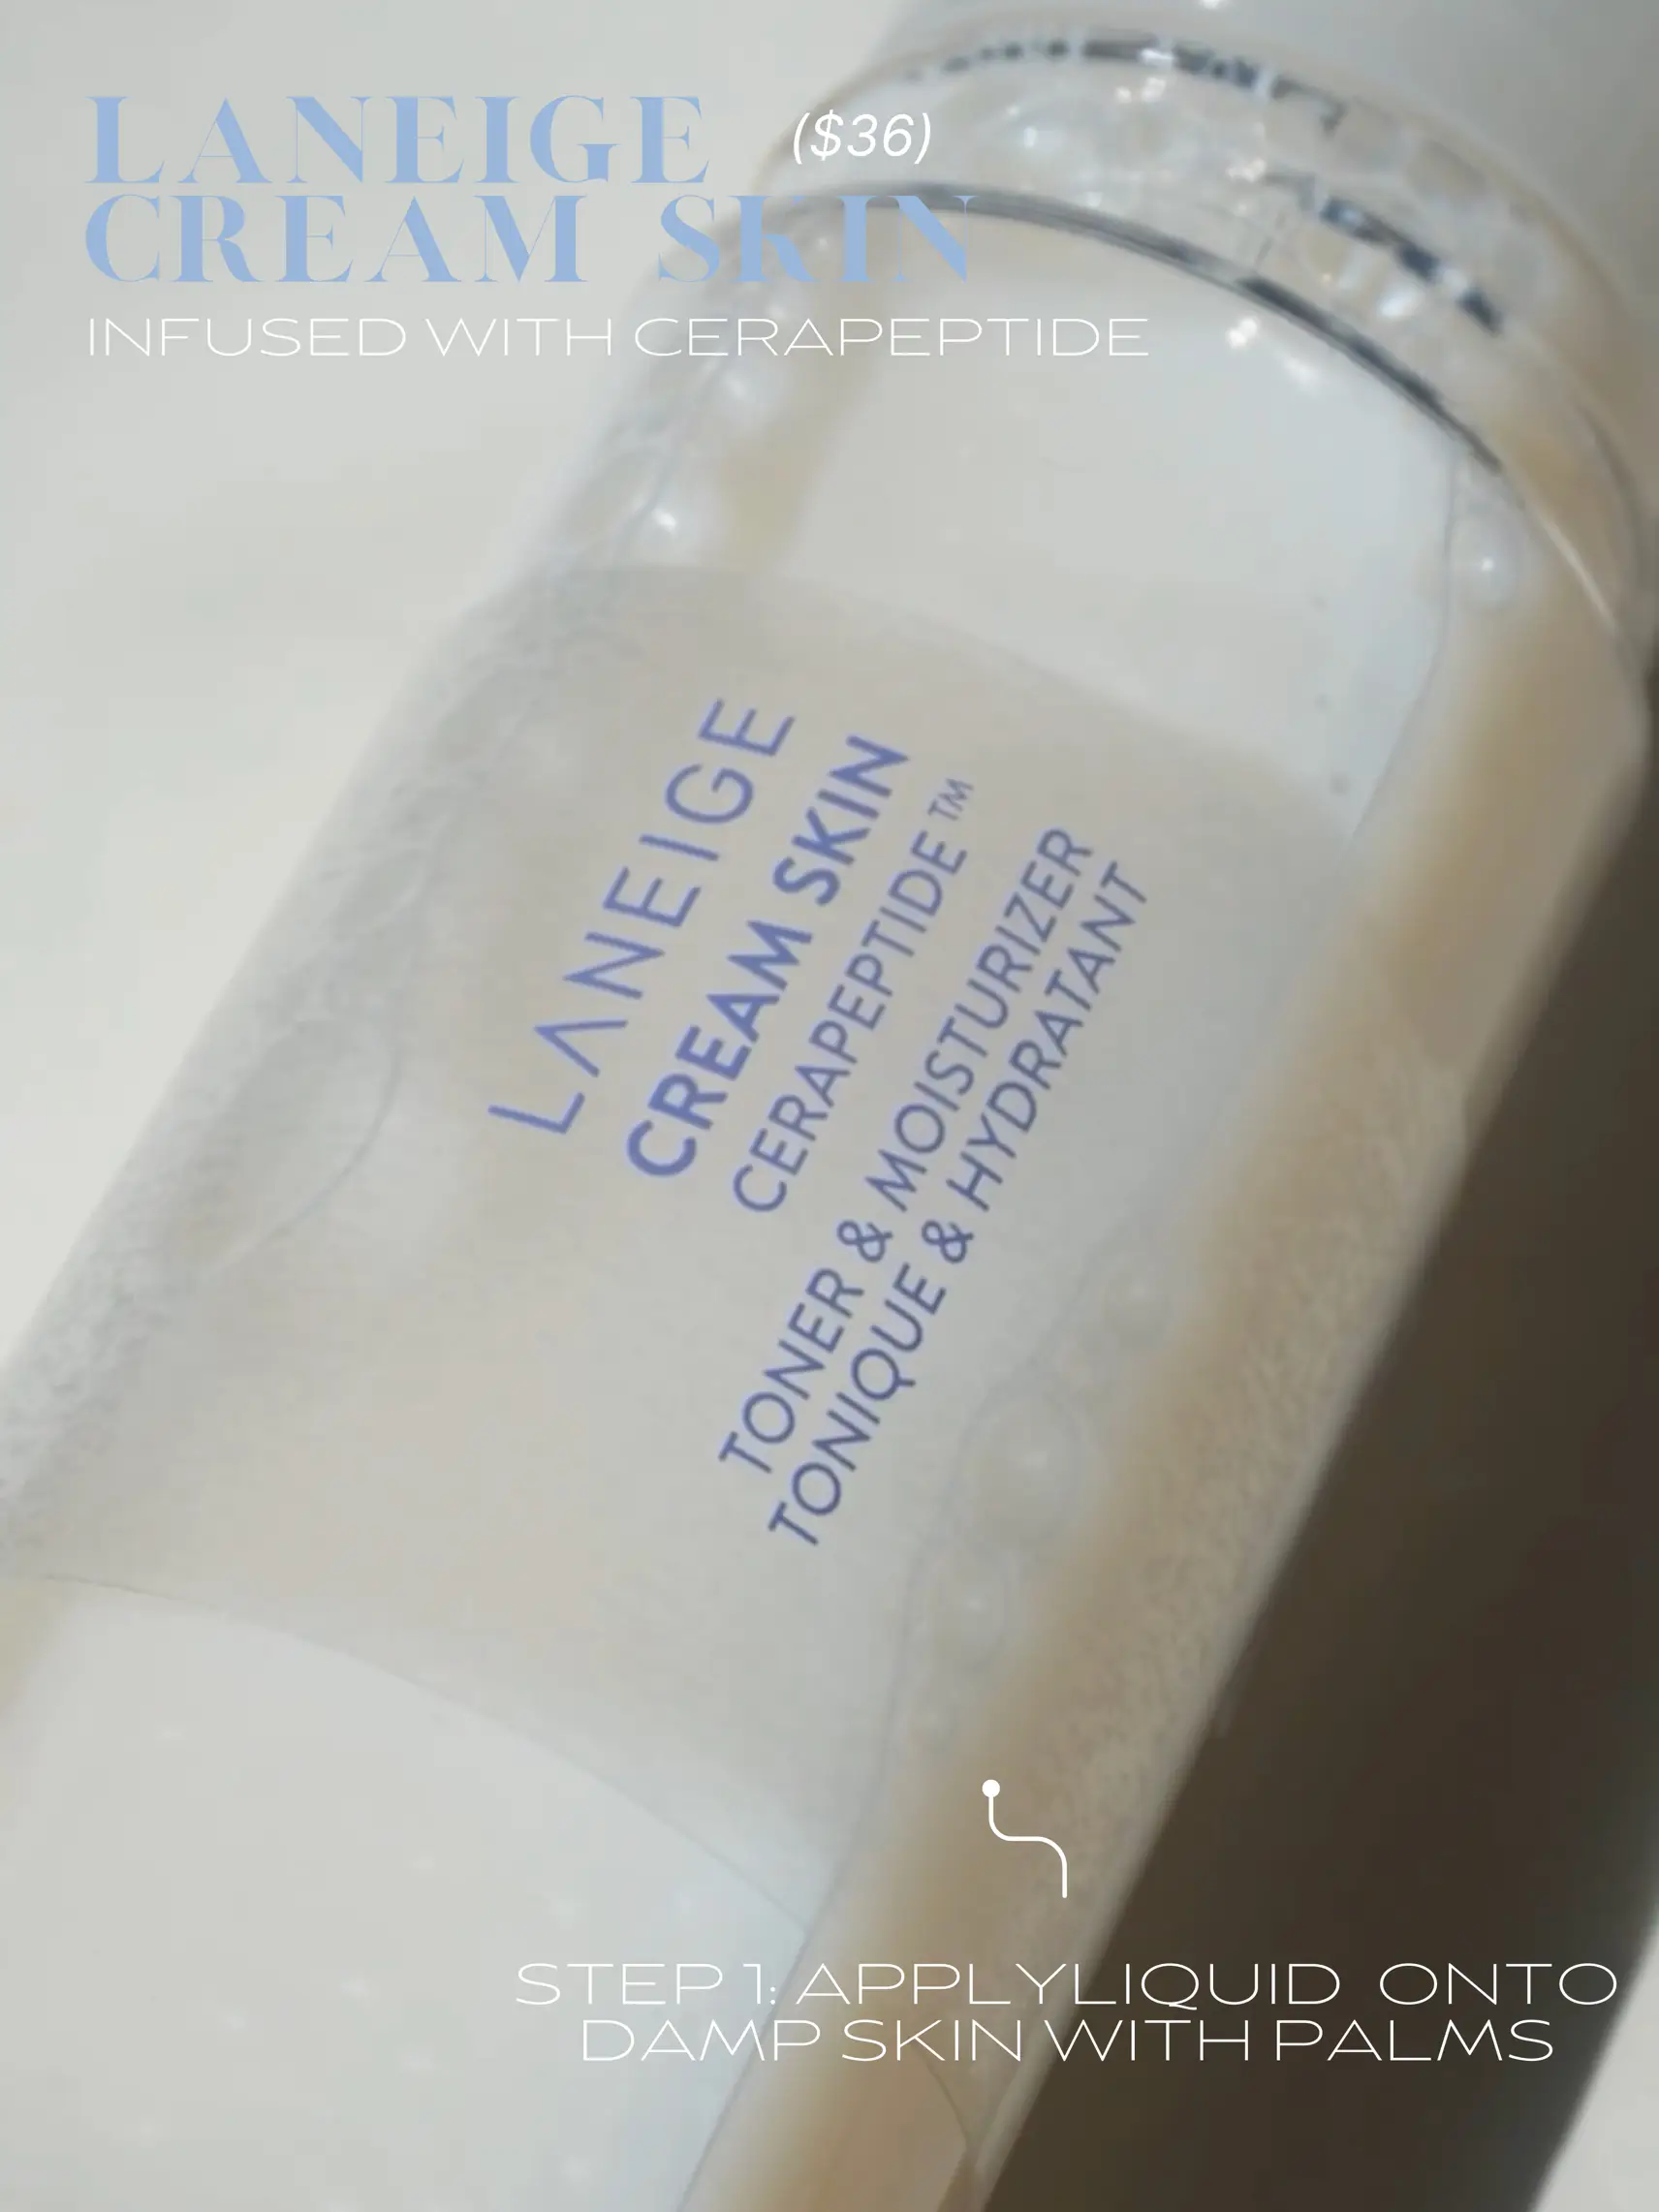 Testing 5 Dupes for Laneige Cream Skin Refiner OG Formula! 